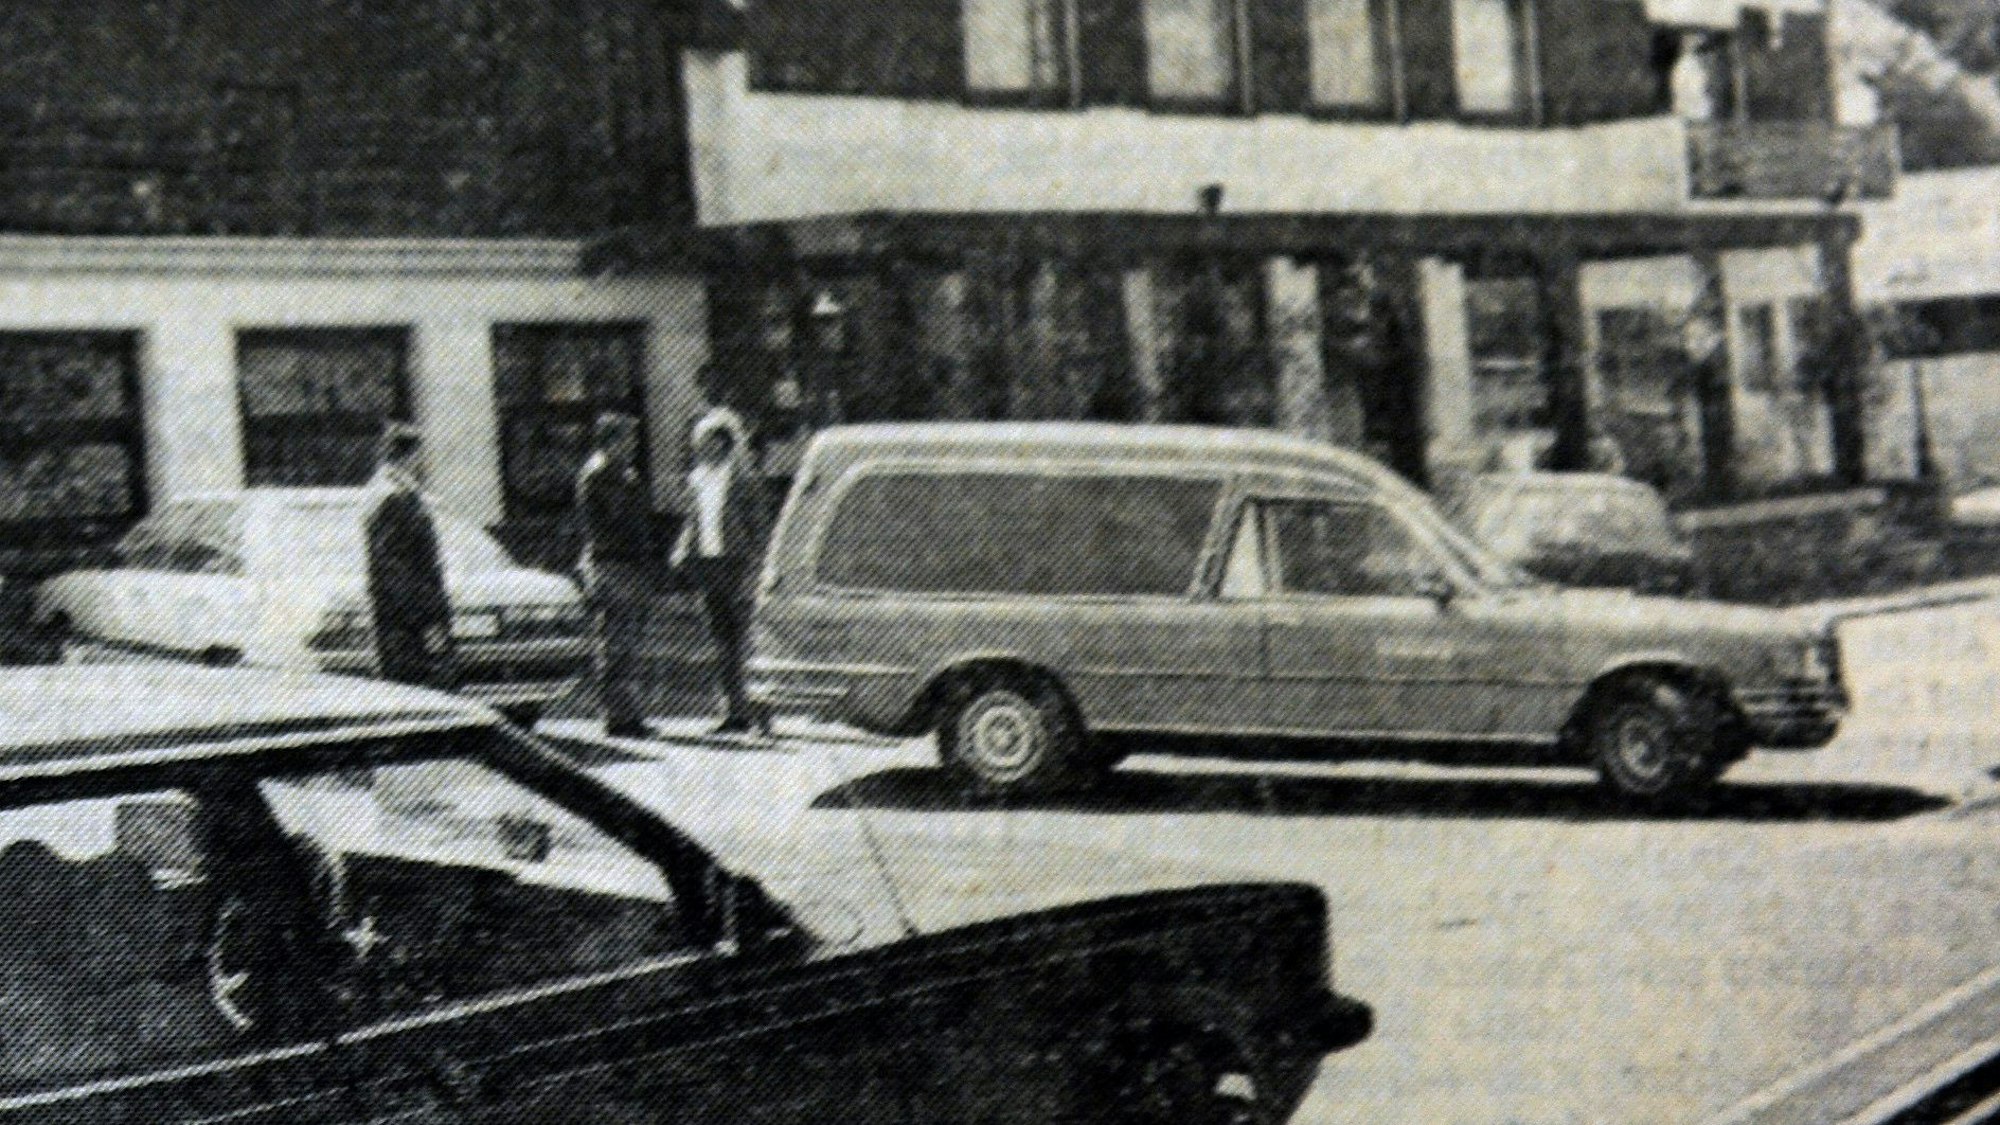 Vor der Gastätte "Naafshäuschen" in Lohmar stehen am Tag der Ermordung von Claudia Otto Einsatzfahrzeuge der Polizei und ein Leichenwagen.